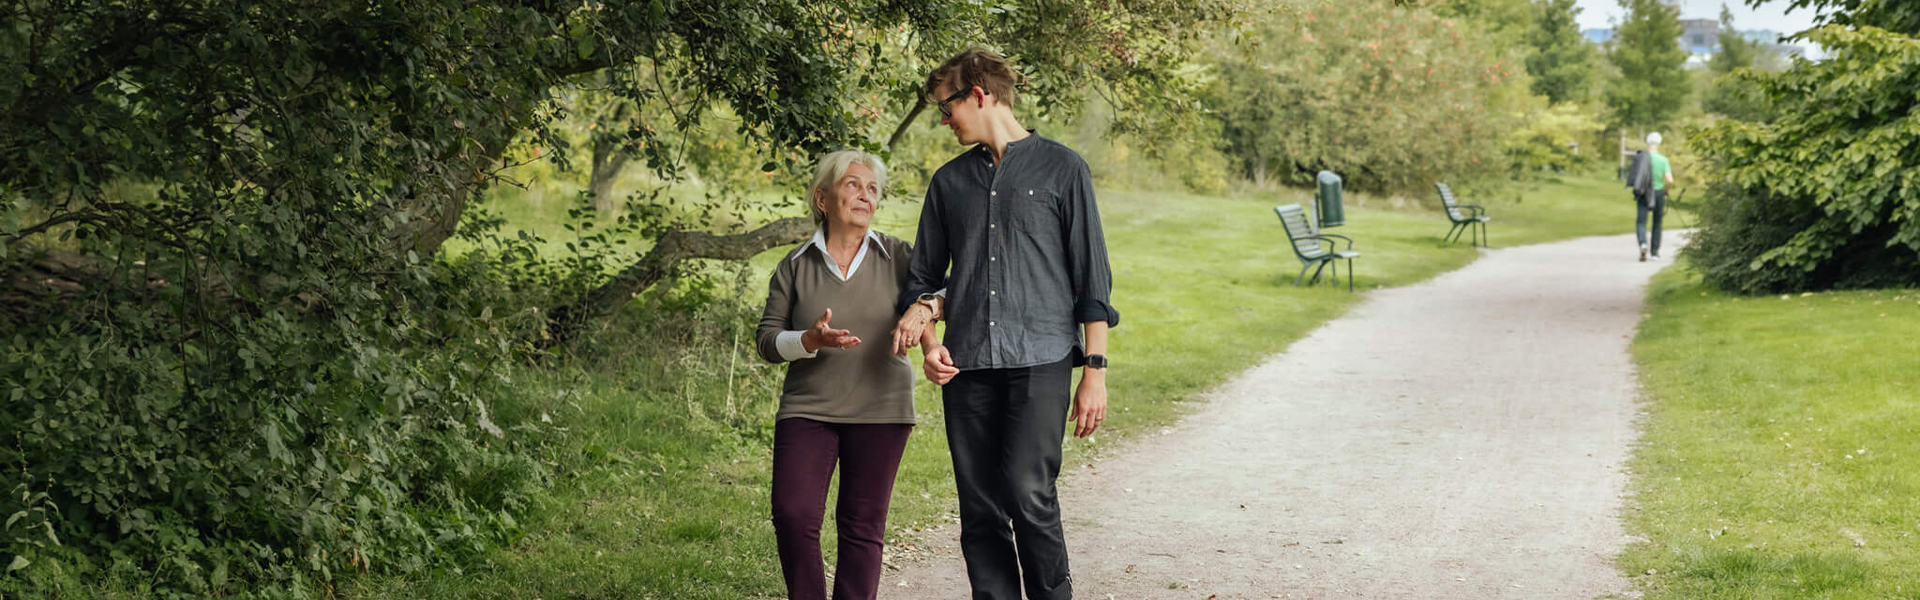 Äldre kvinna och yngre man promenerar i en park.